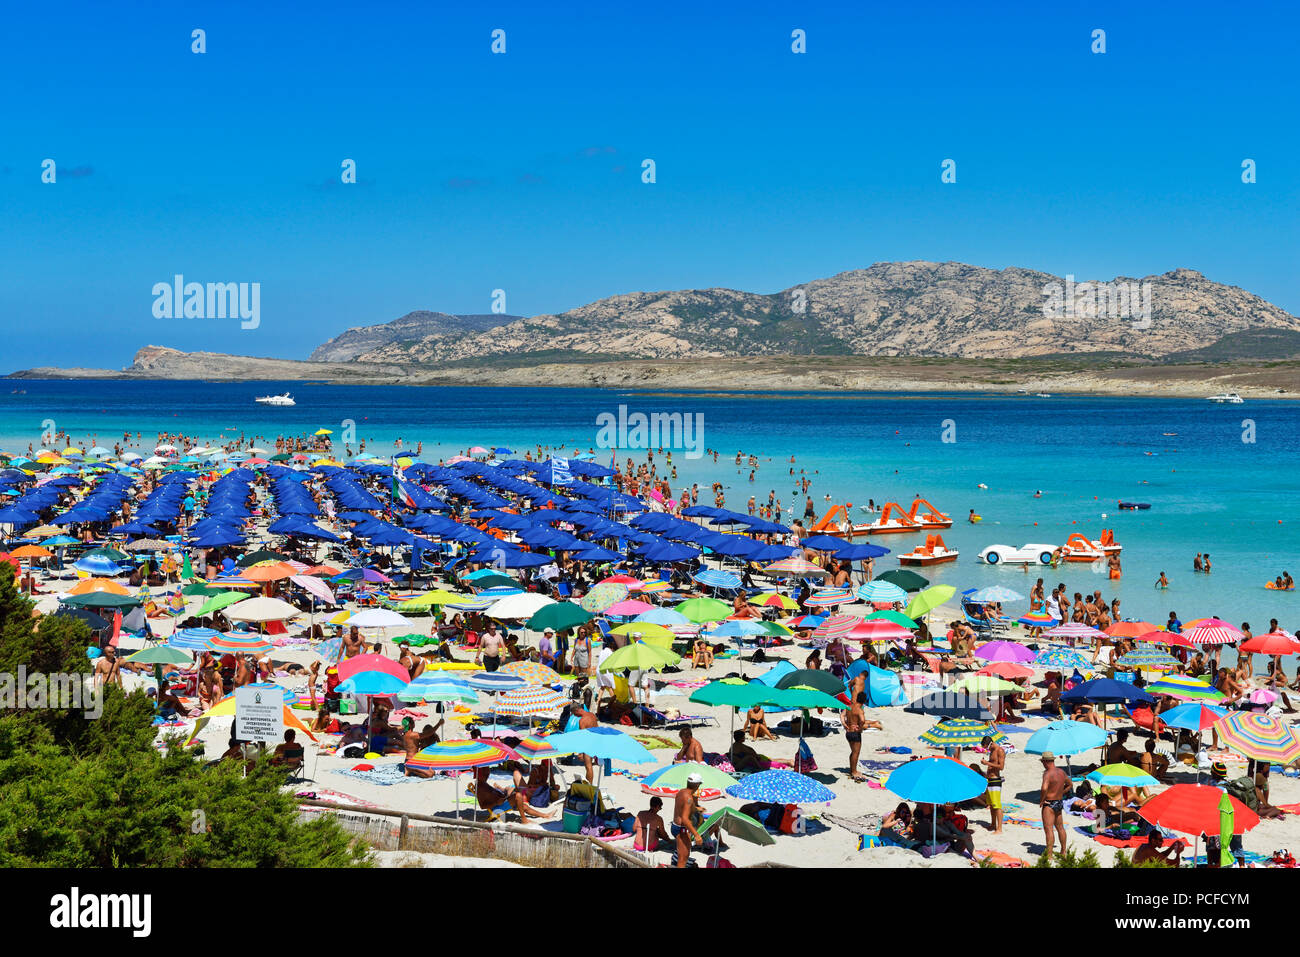 Affollata spiaggia con ombrelloni colorati e bagnanti a Stintino, Porto Torres, in Sardegna, Italia Foto Stock